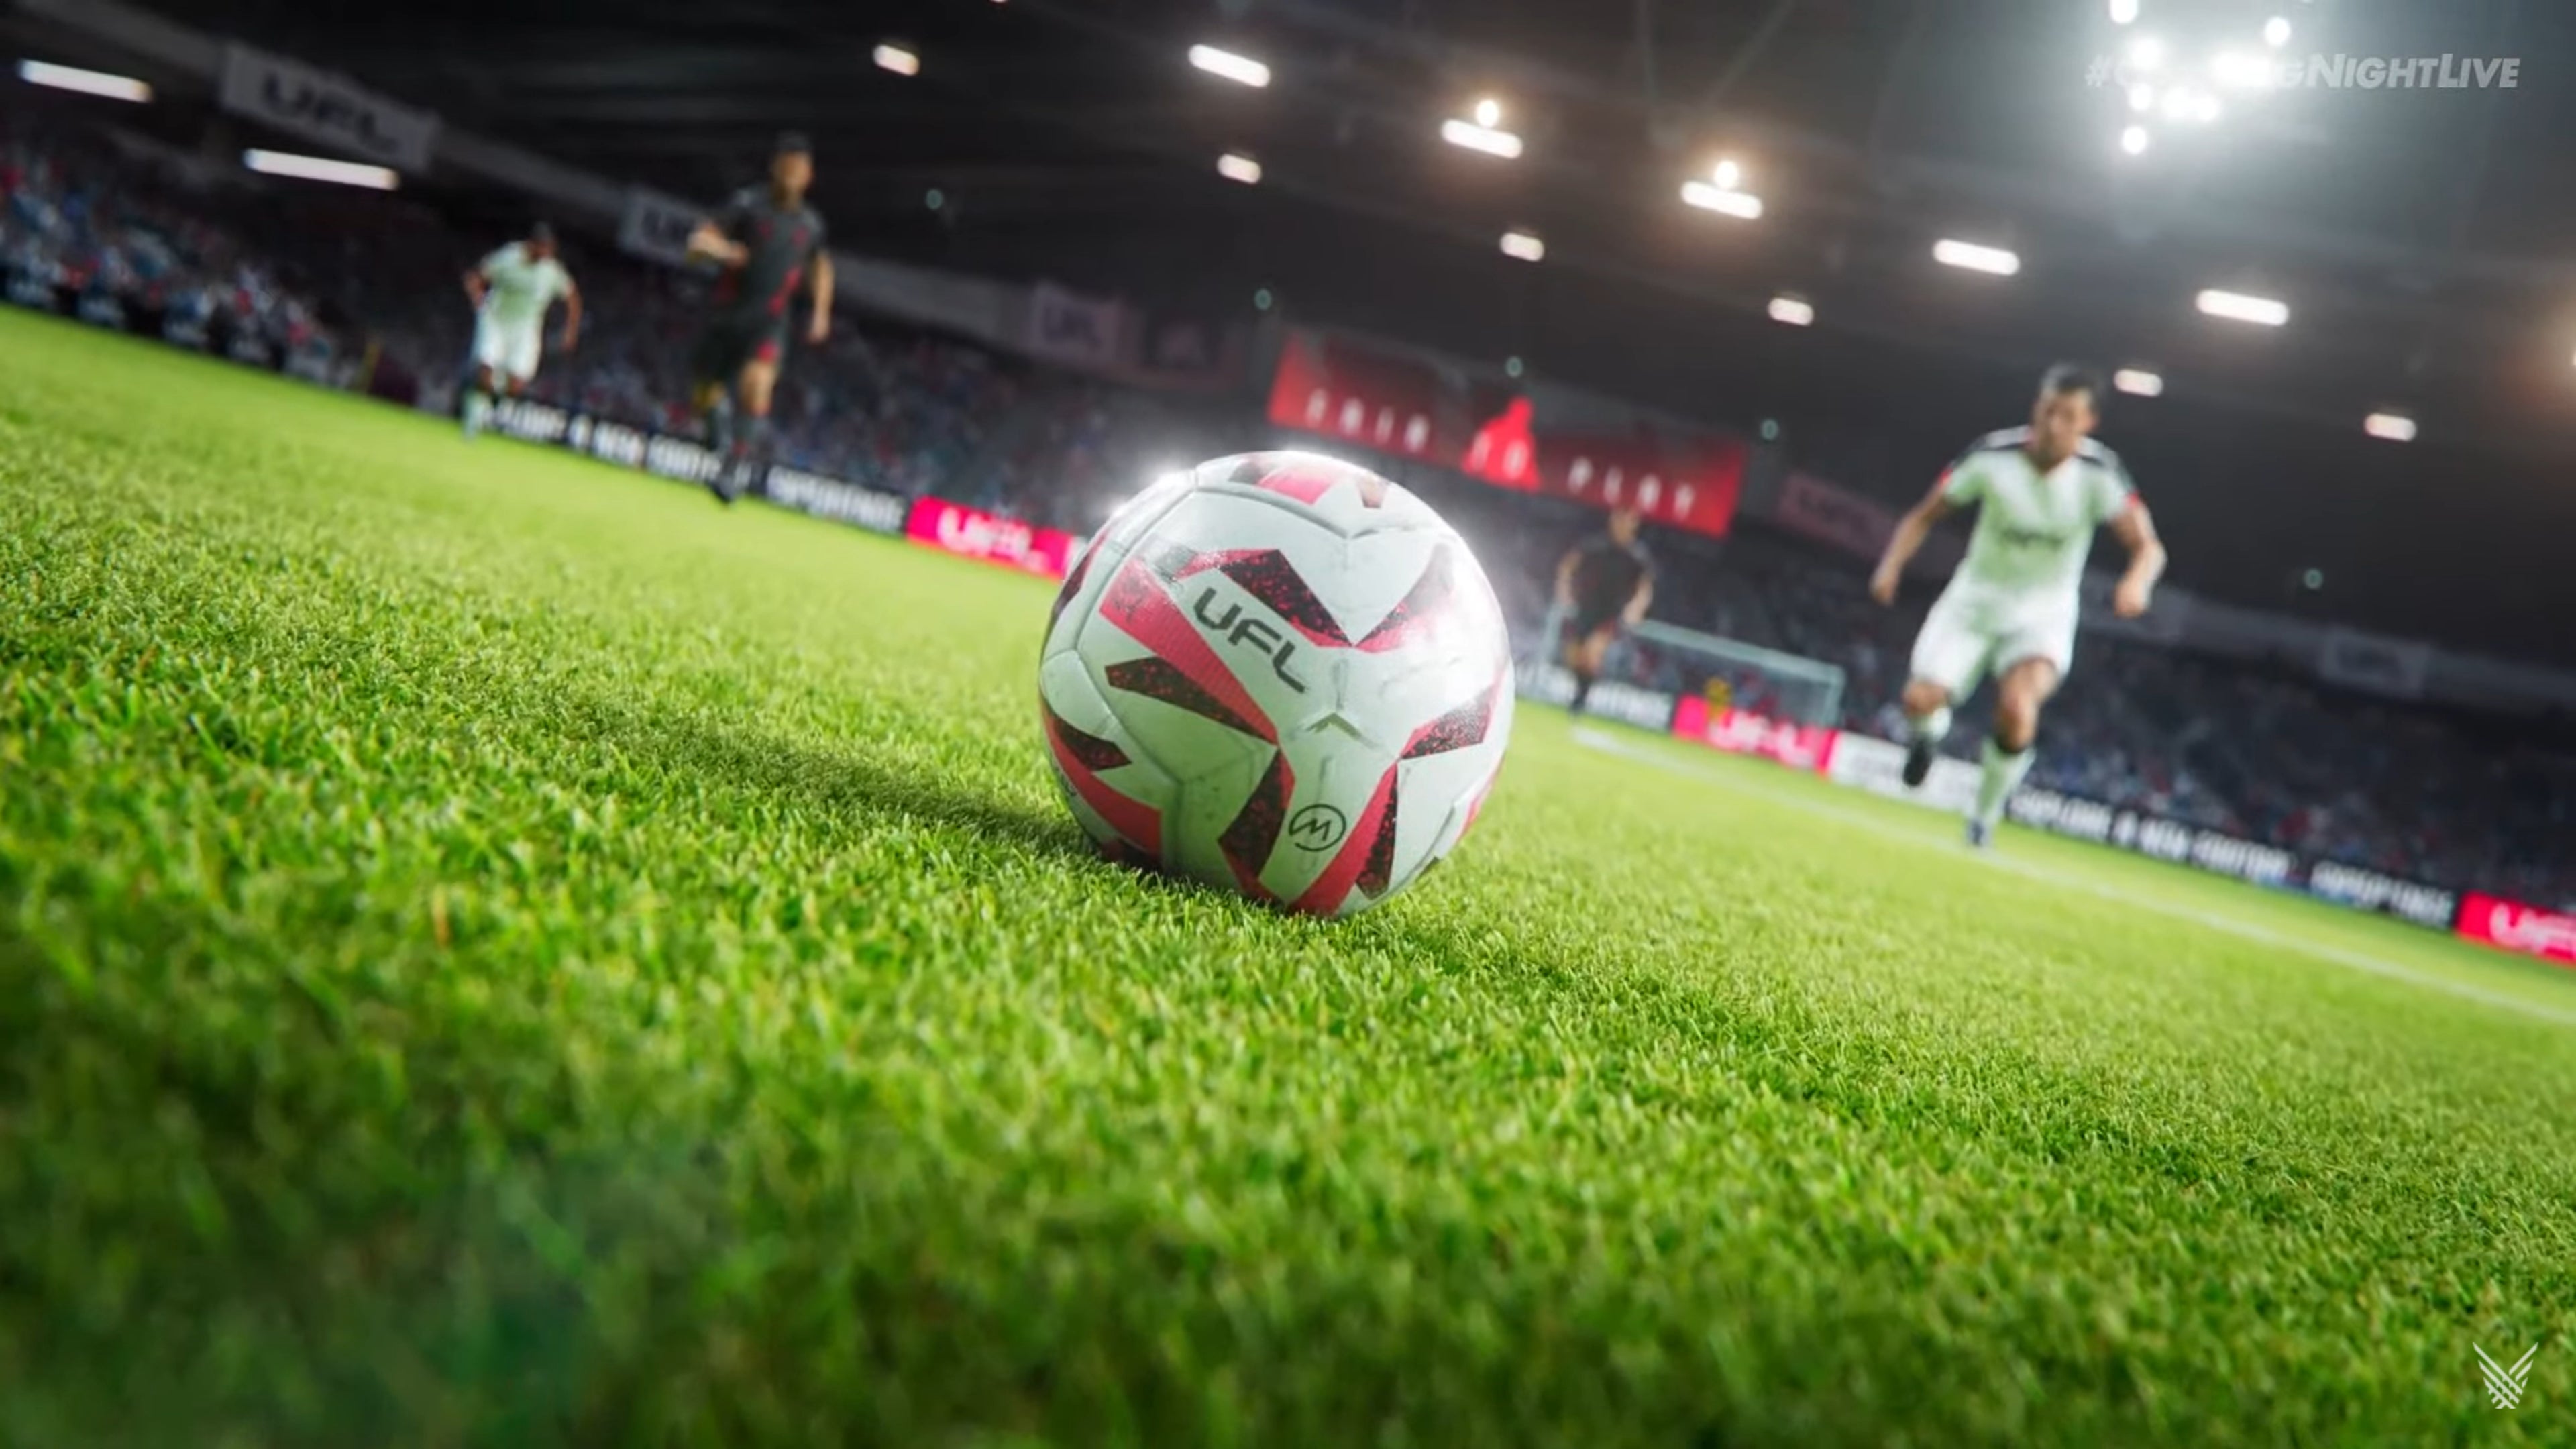 Strikerz Inc é novo jogo de futebol para concorrer com FIFA e eFootball